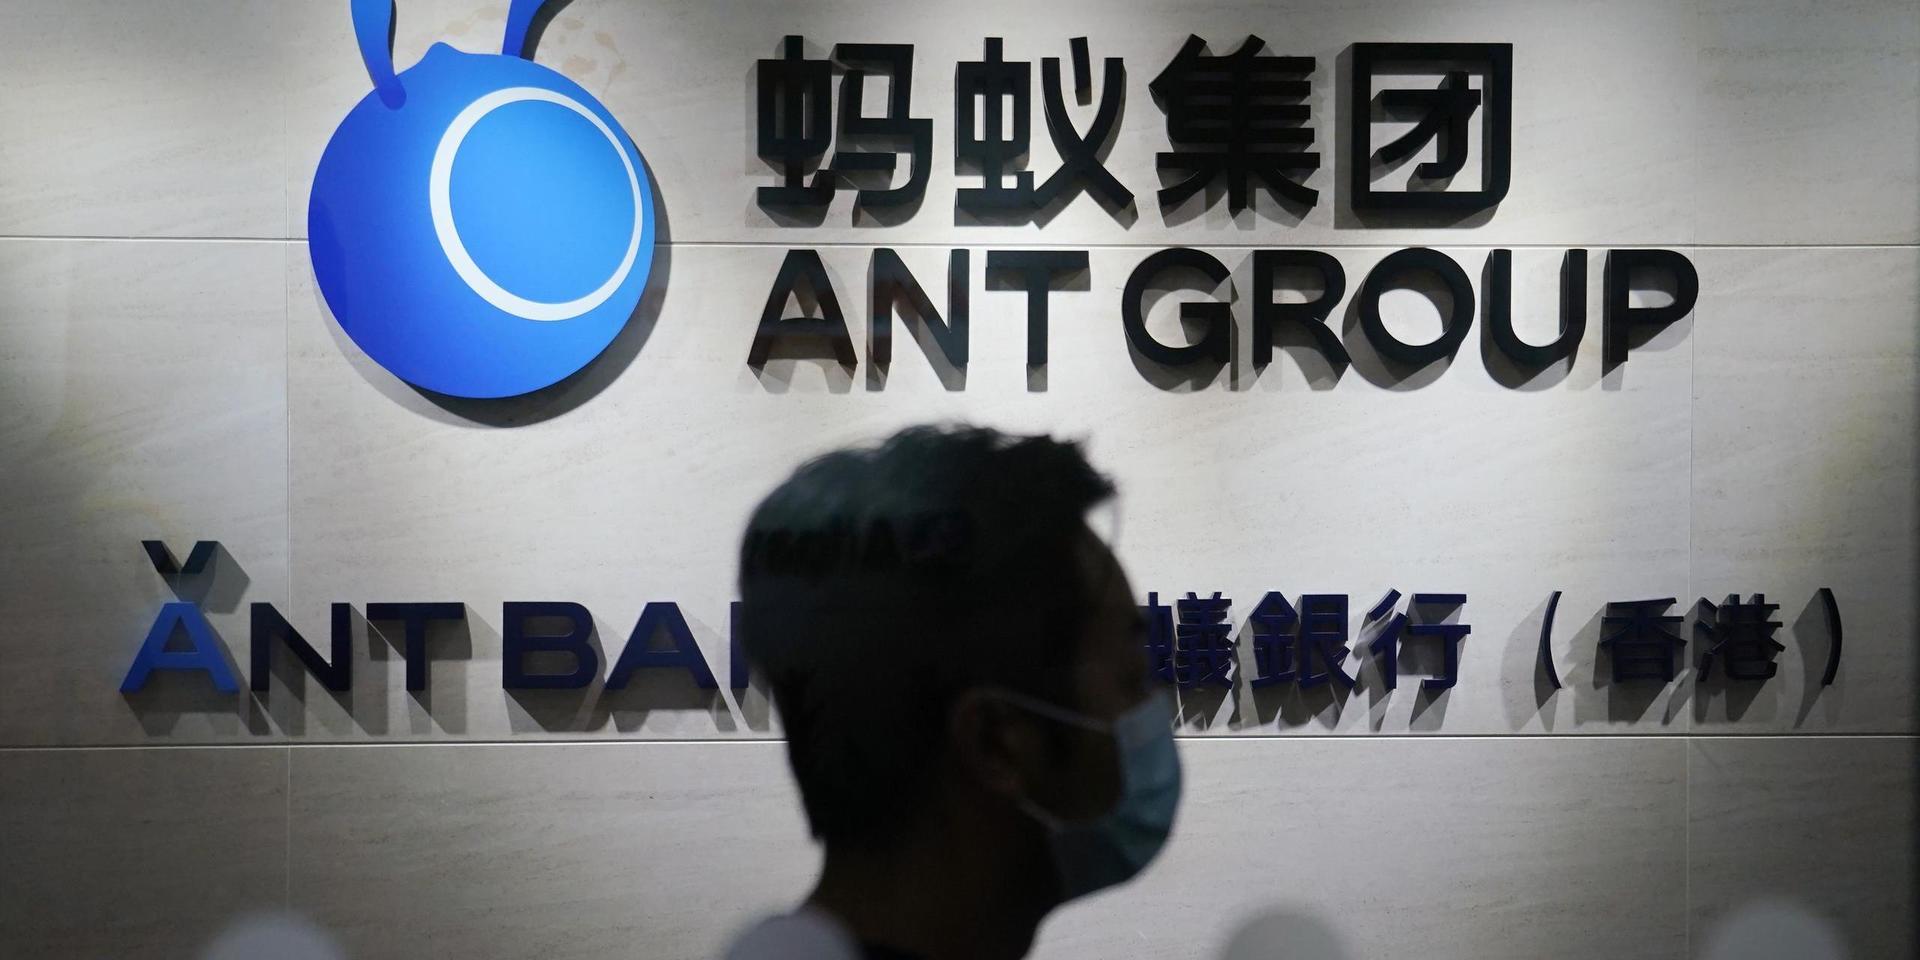 Ant Groups börsnotering stoppad av Shanghaibörsen. Arkivbild